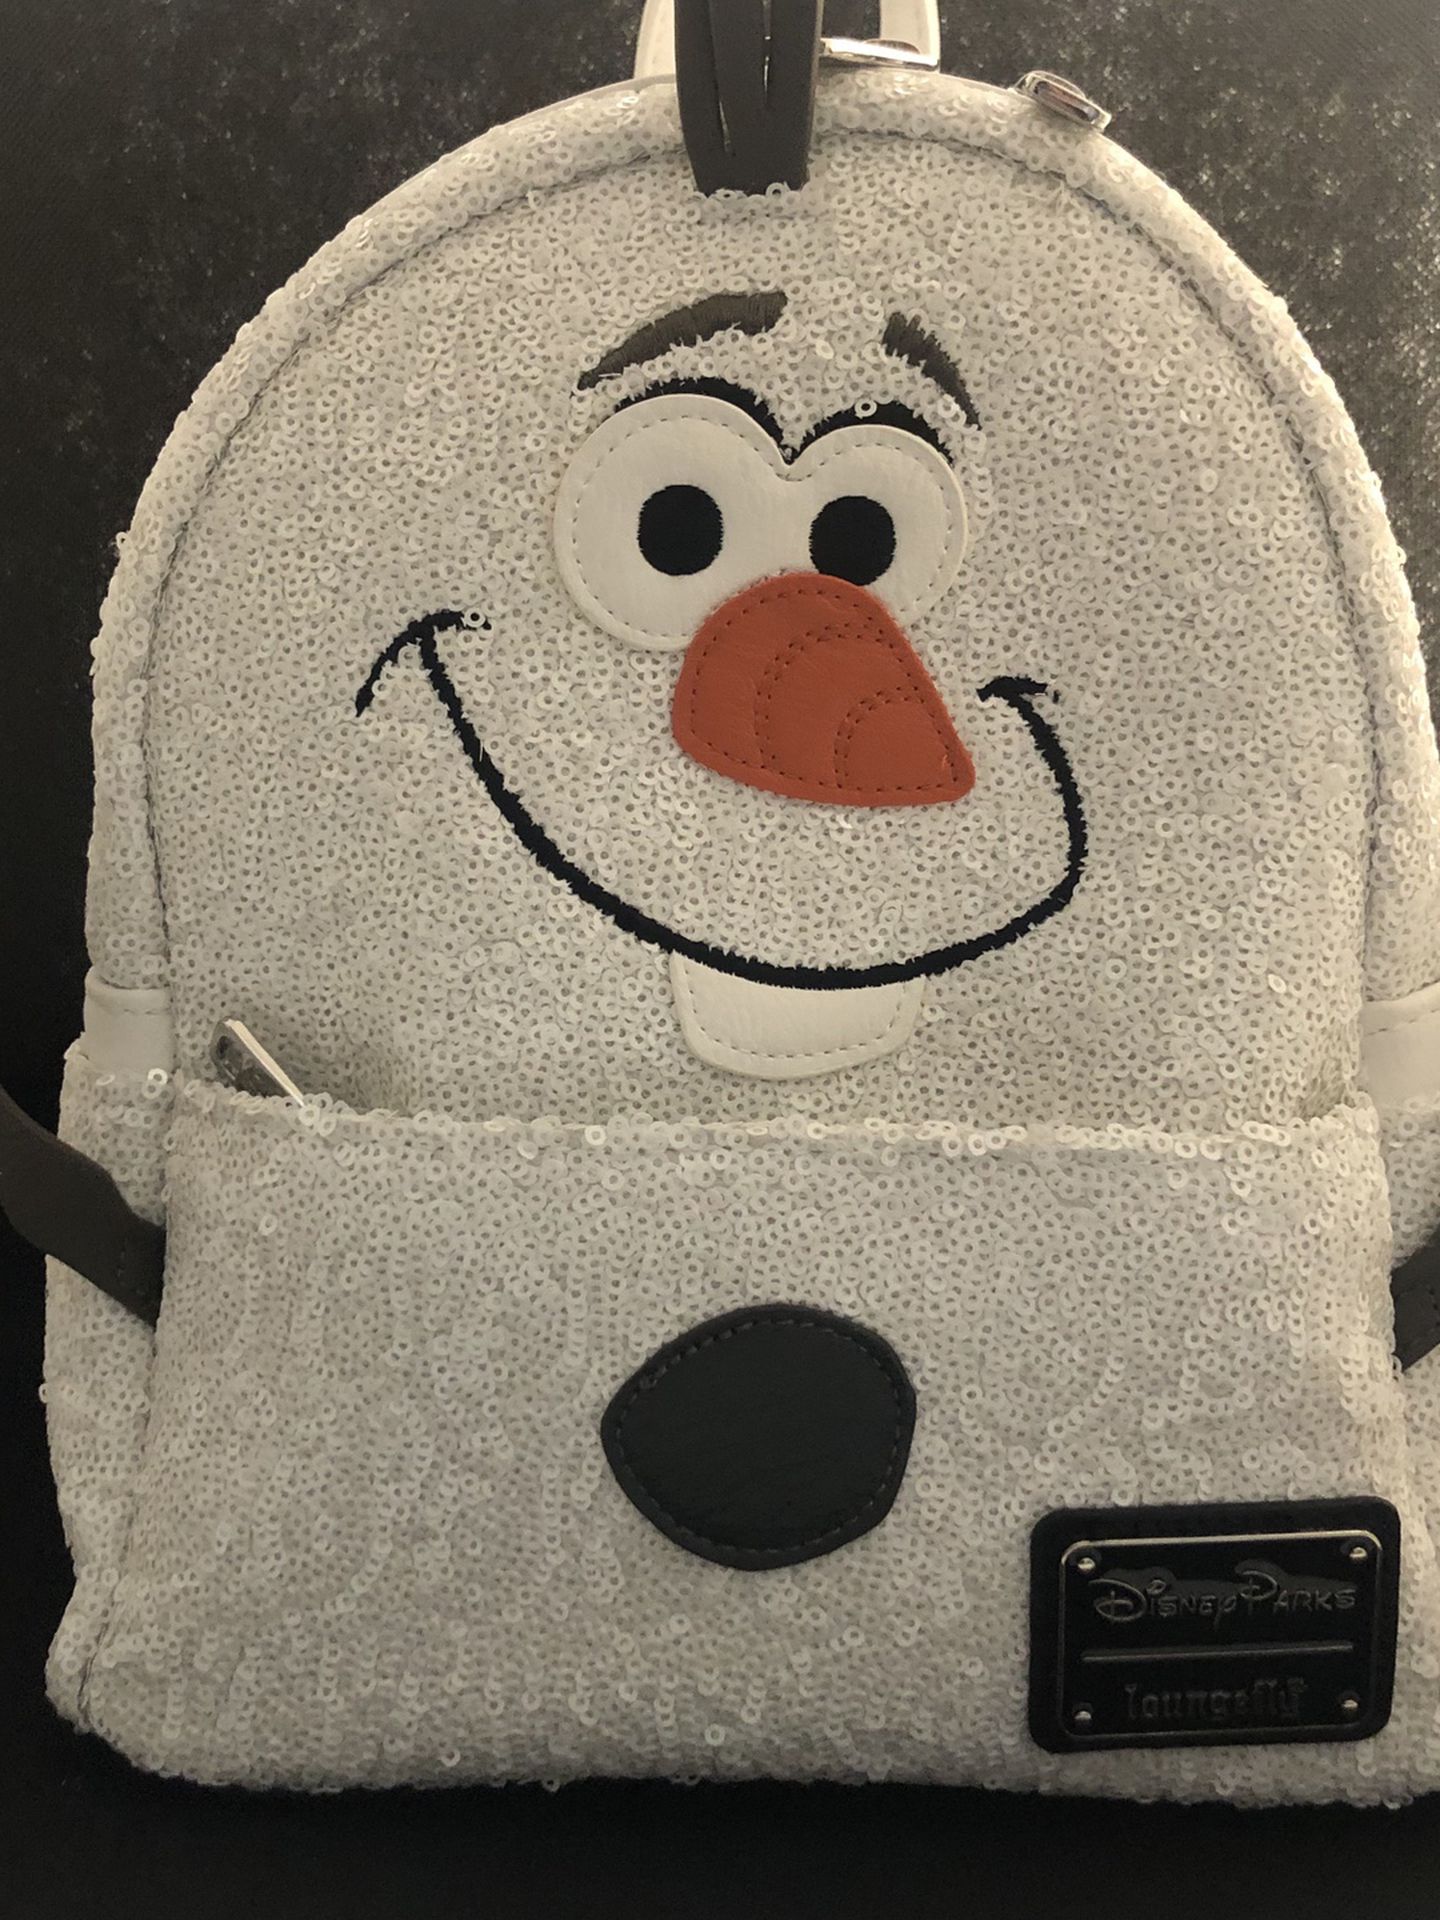 Olaf Disney Bag